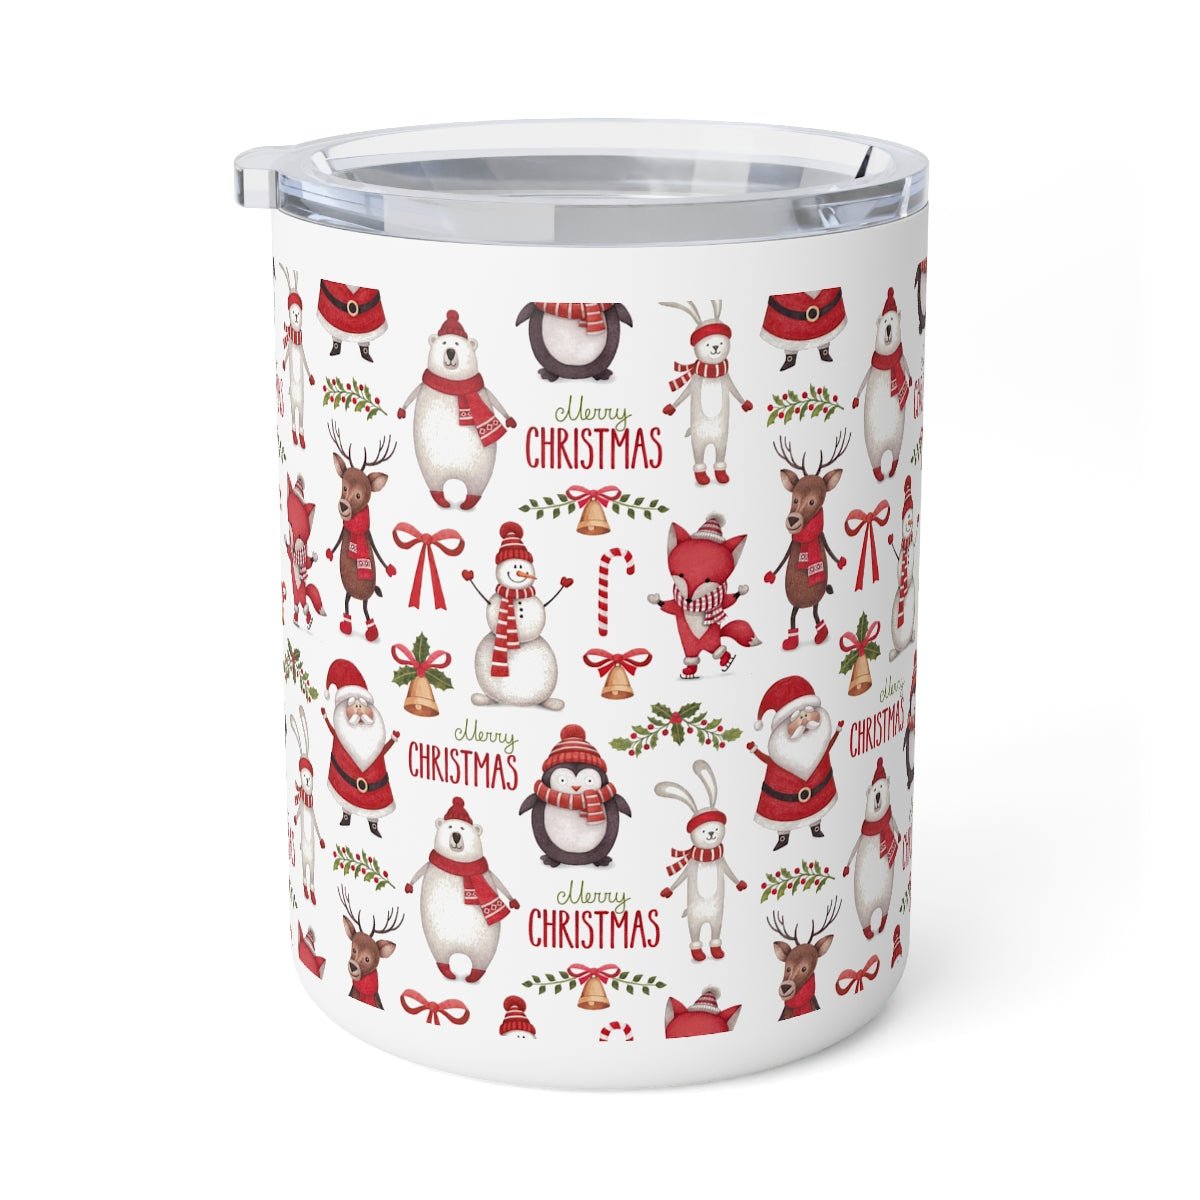 Christmas Santa Insulated Coffee Mug, 10oz - Puffin Lime